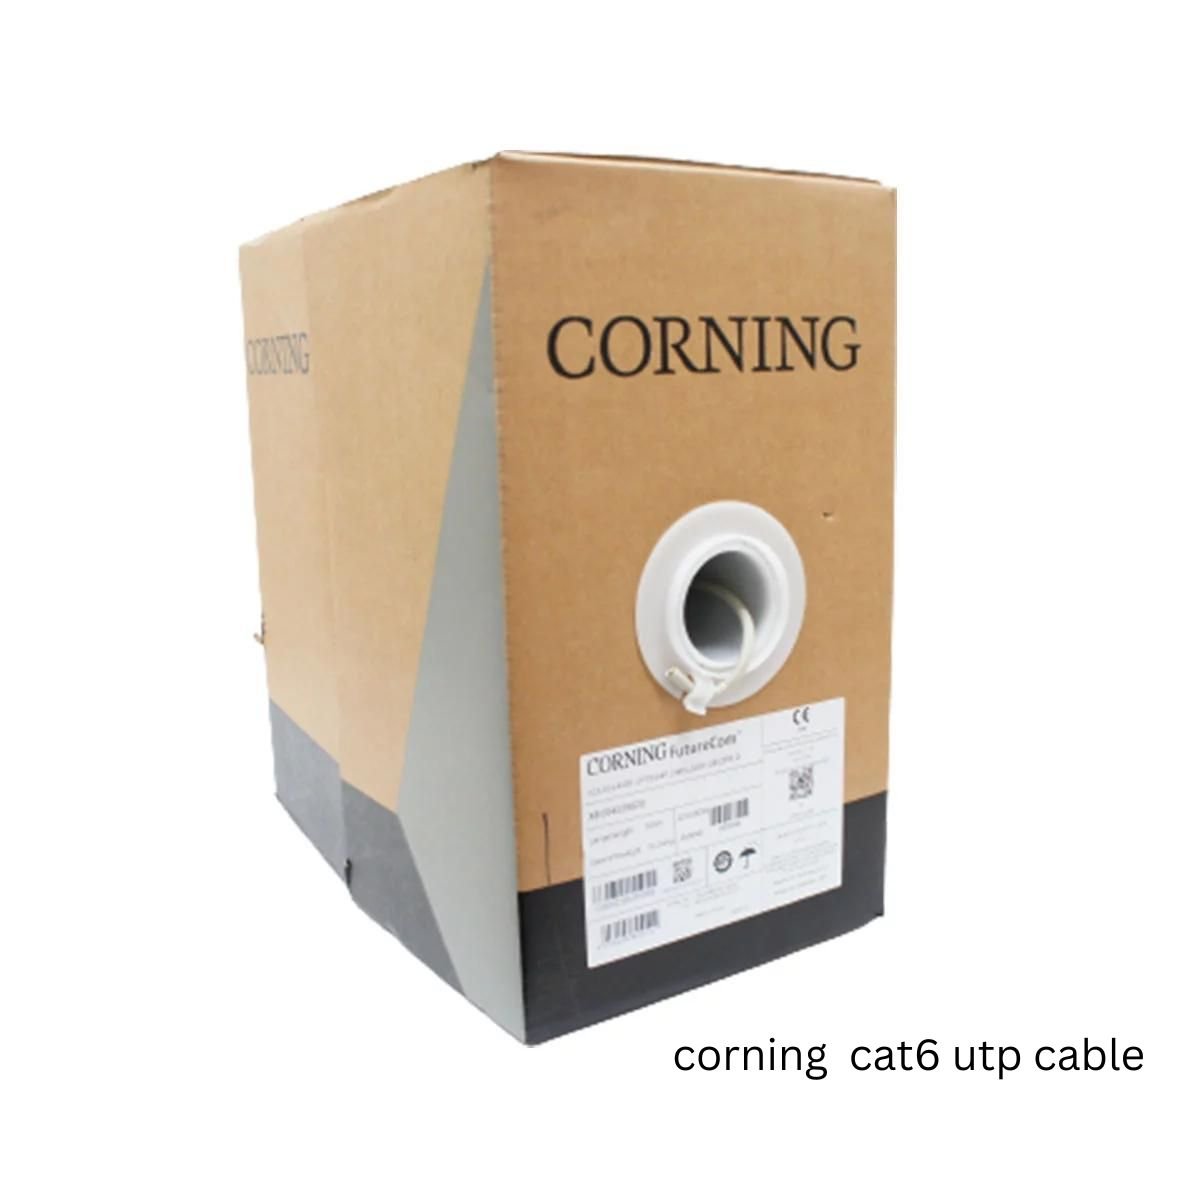 Corning Cat6 cable in uae